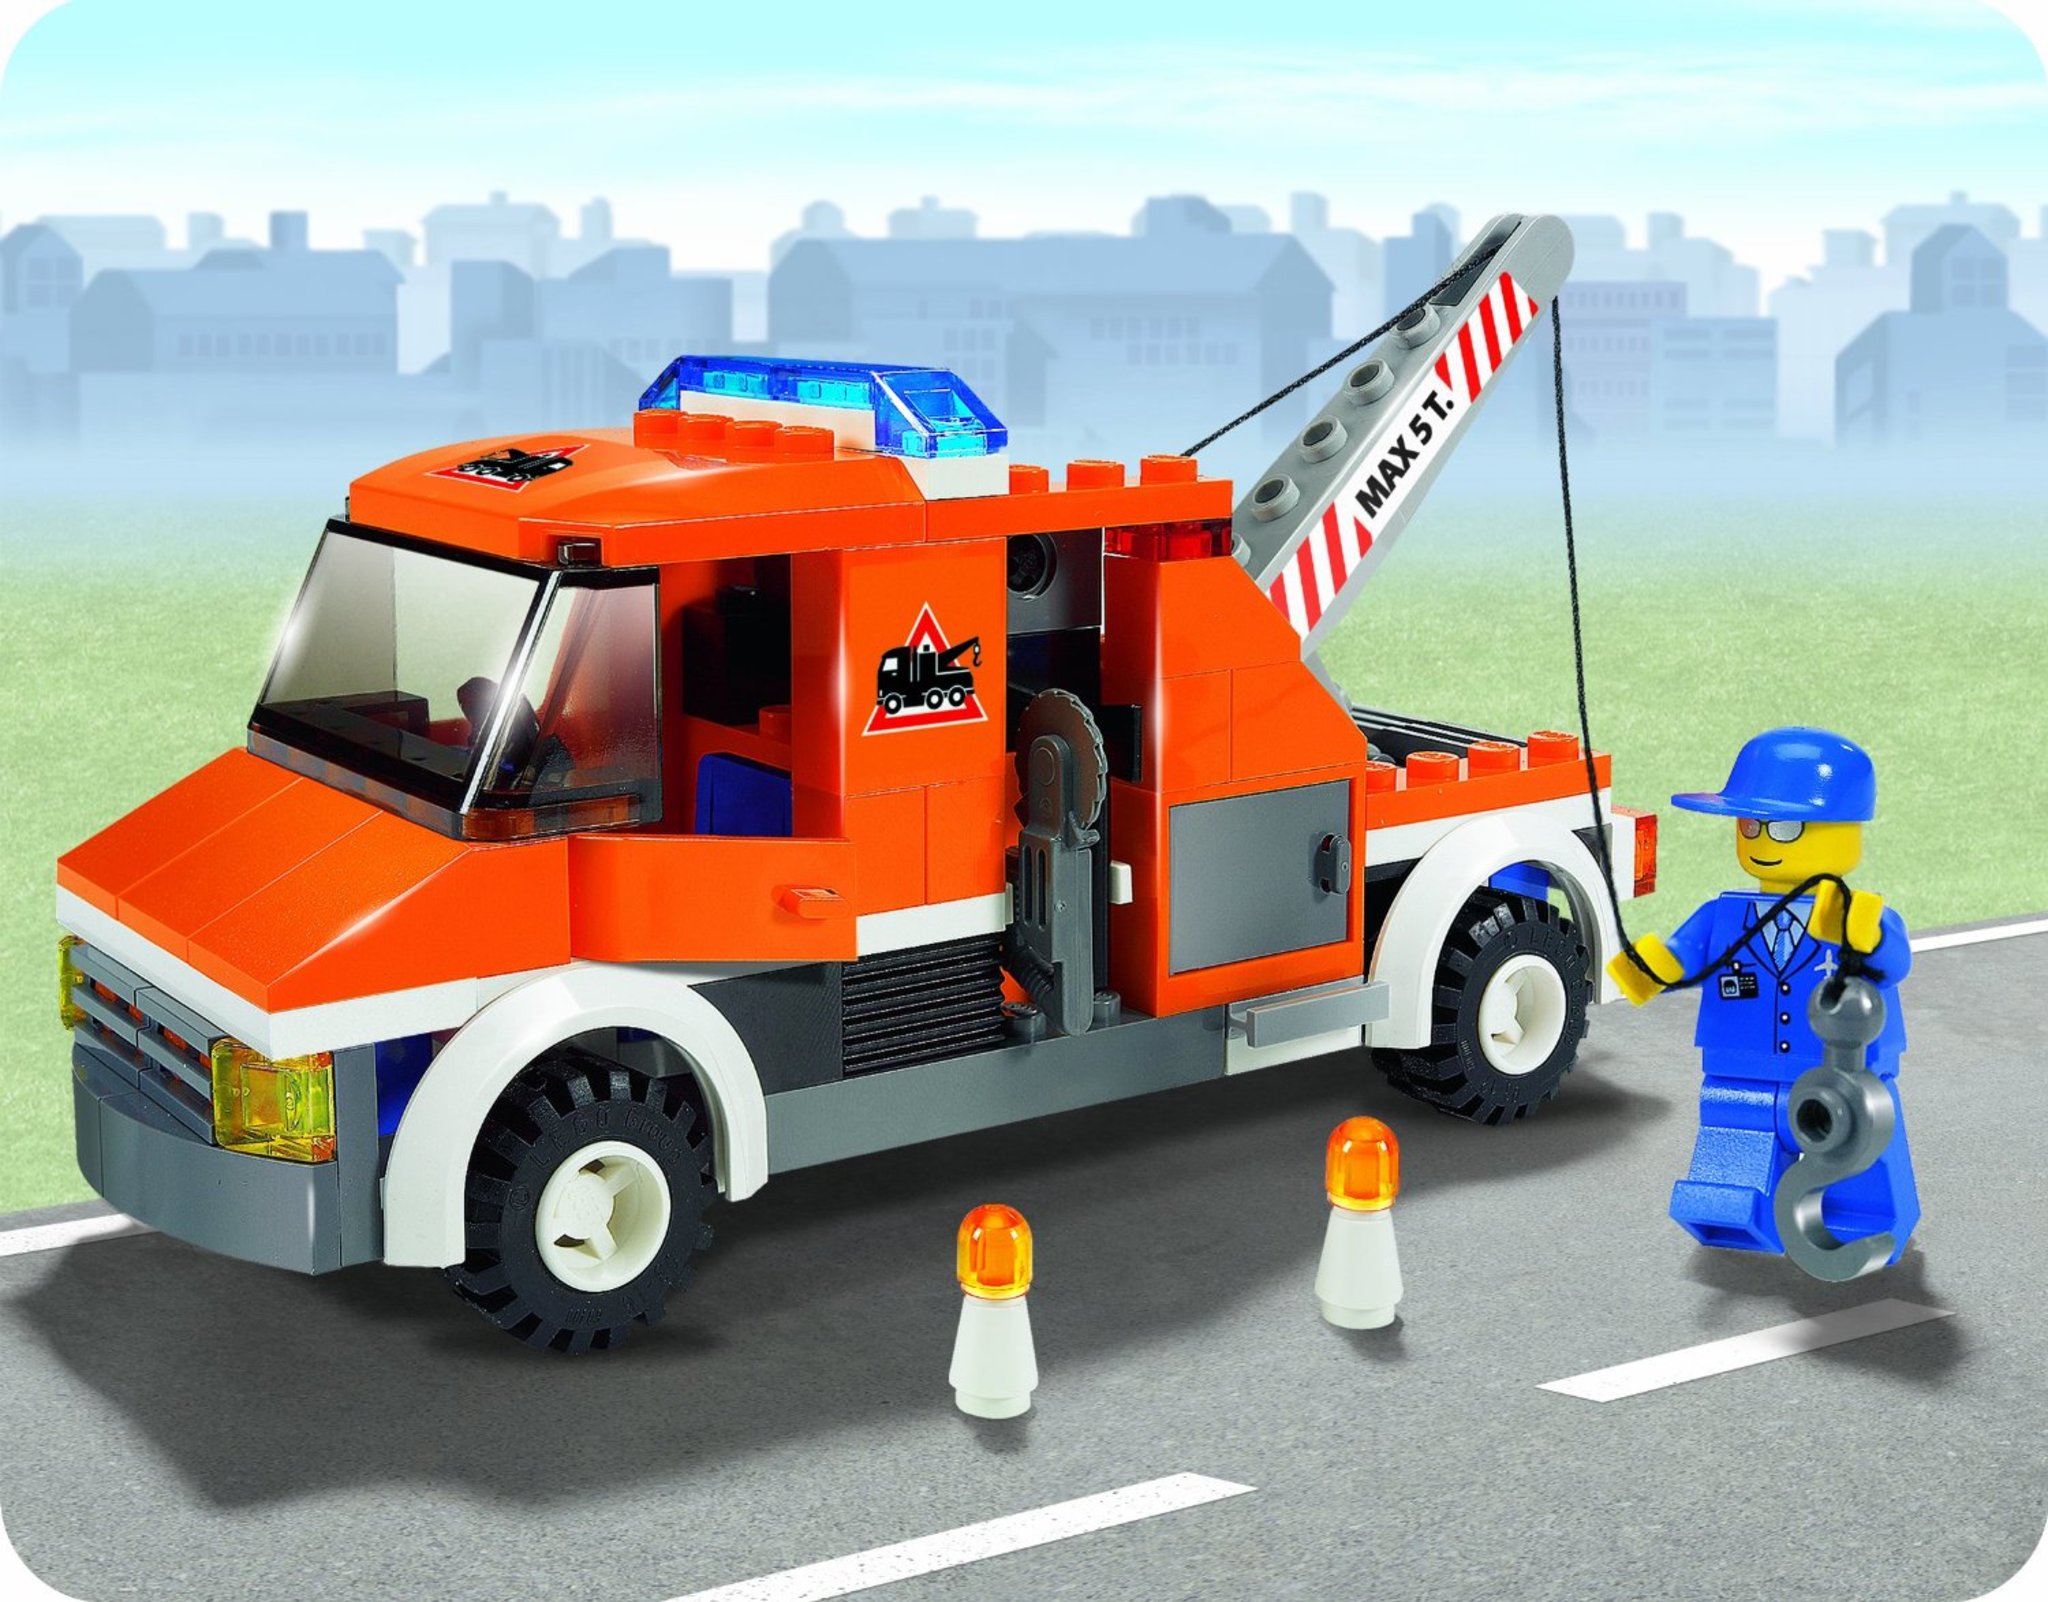 LEGO City 7638 - Tow Truck | Mattonito